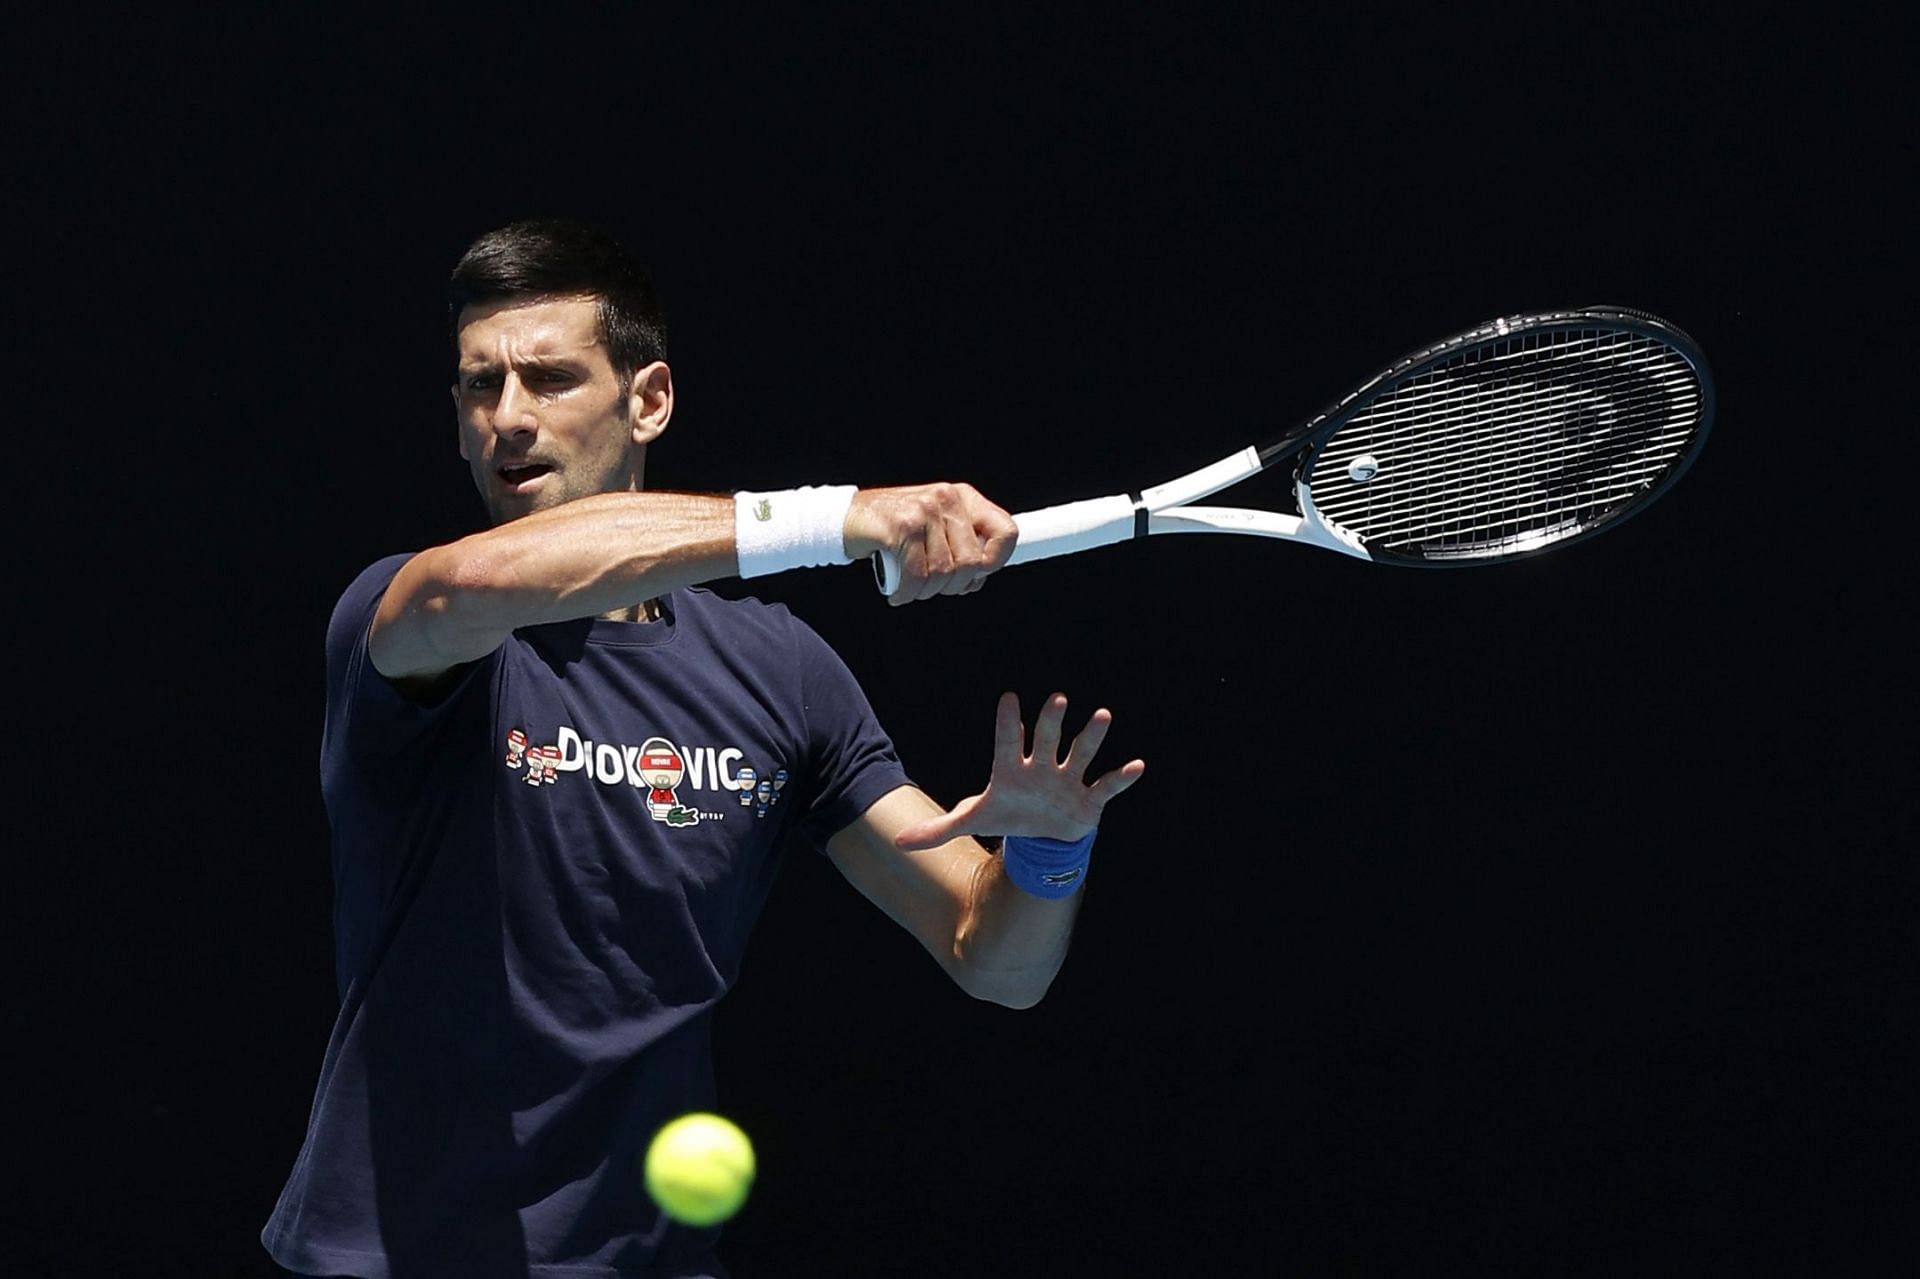 Novak Djokovic practices at the Rod Laver Arena in Melbourne